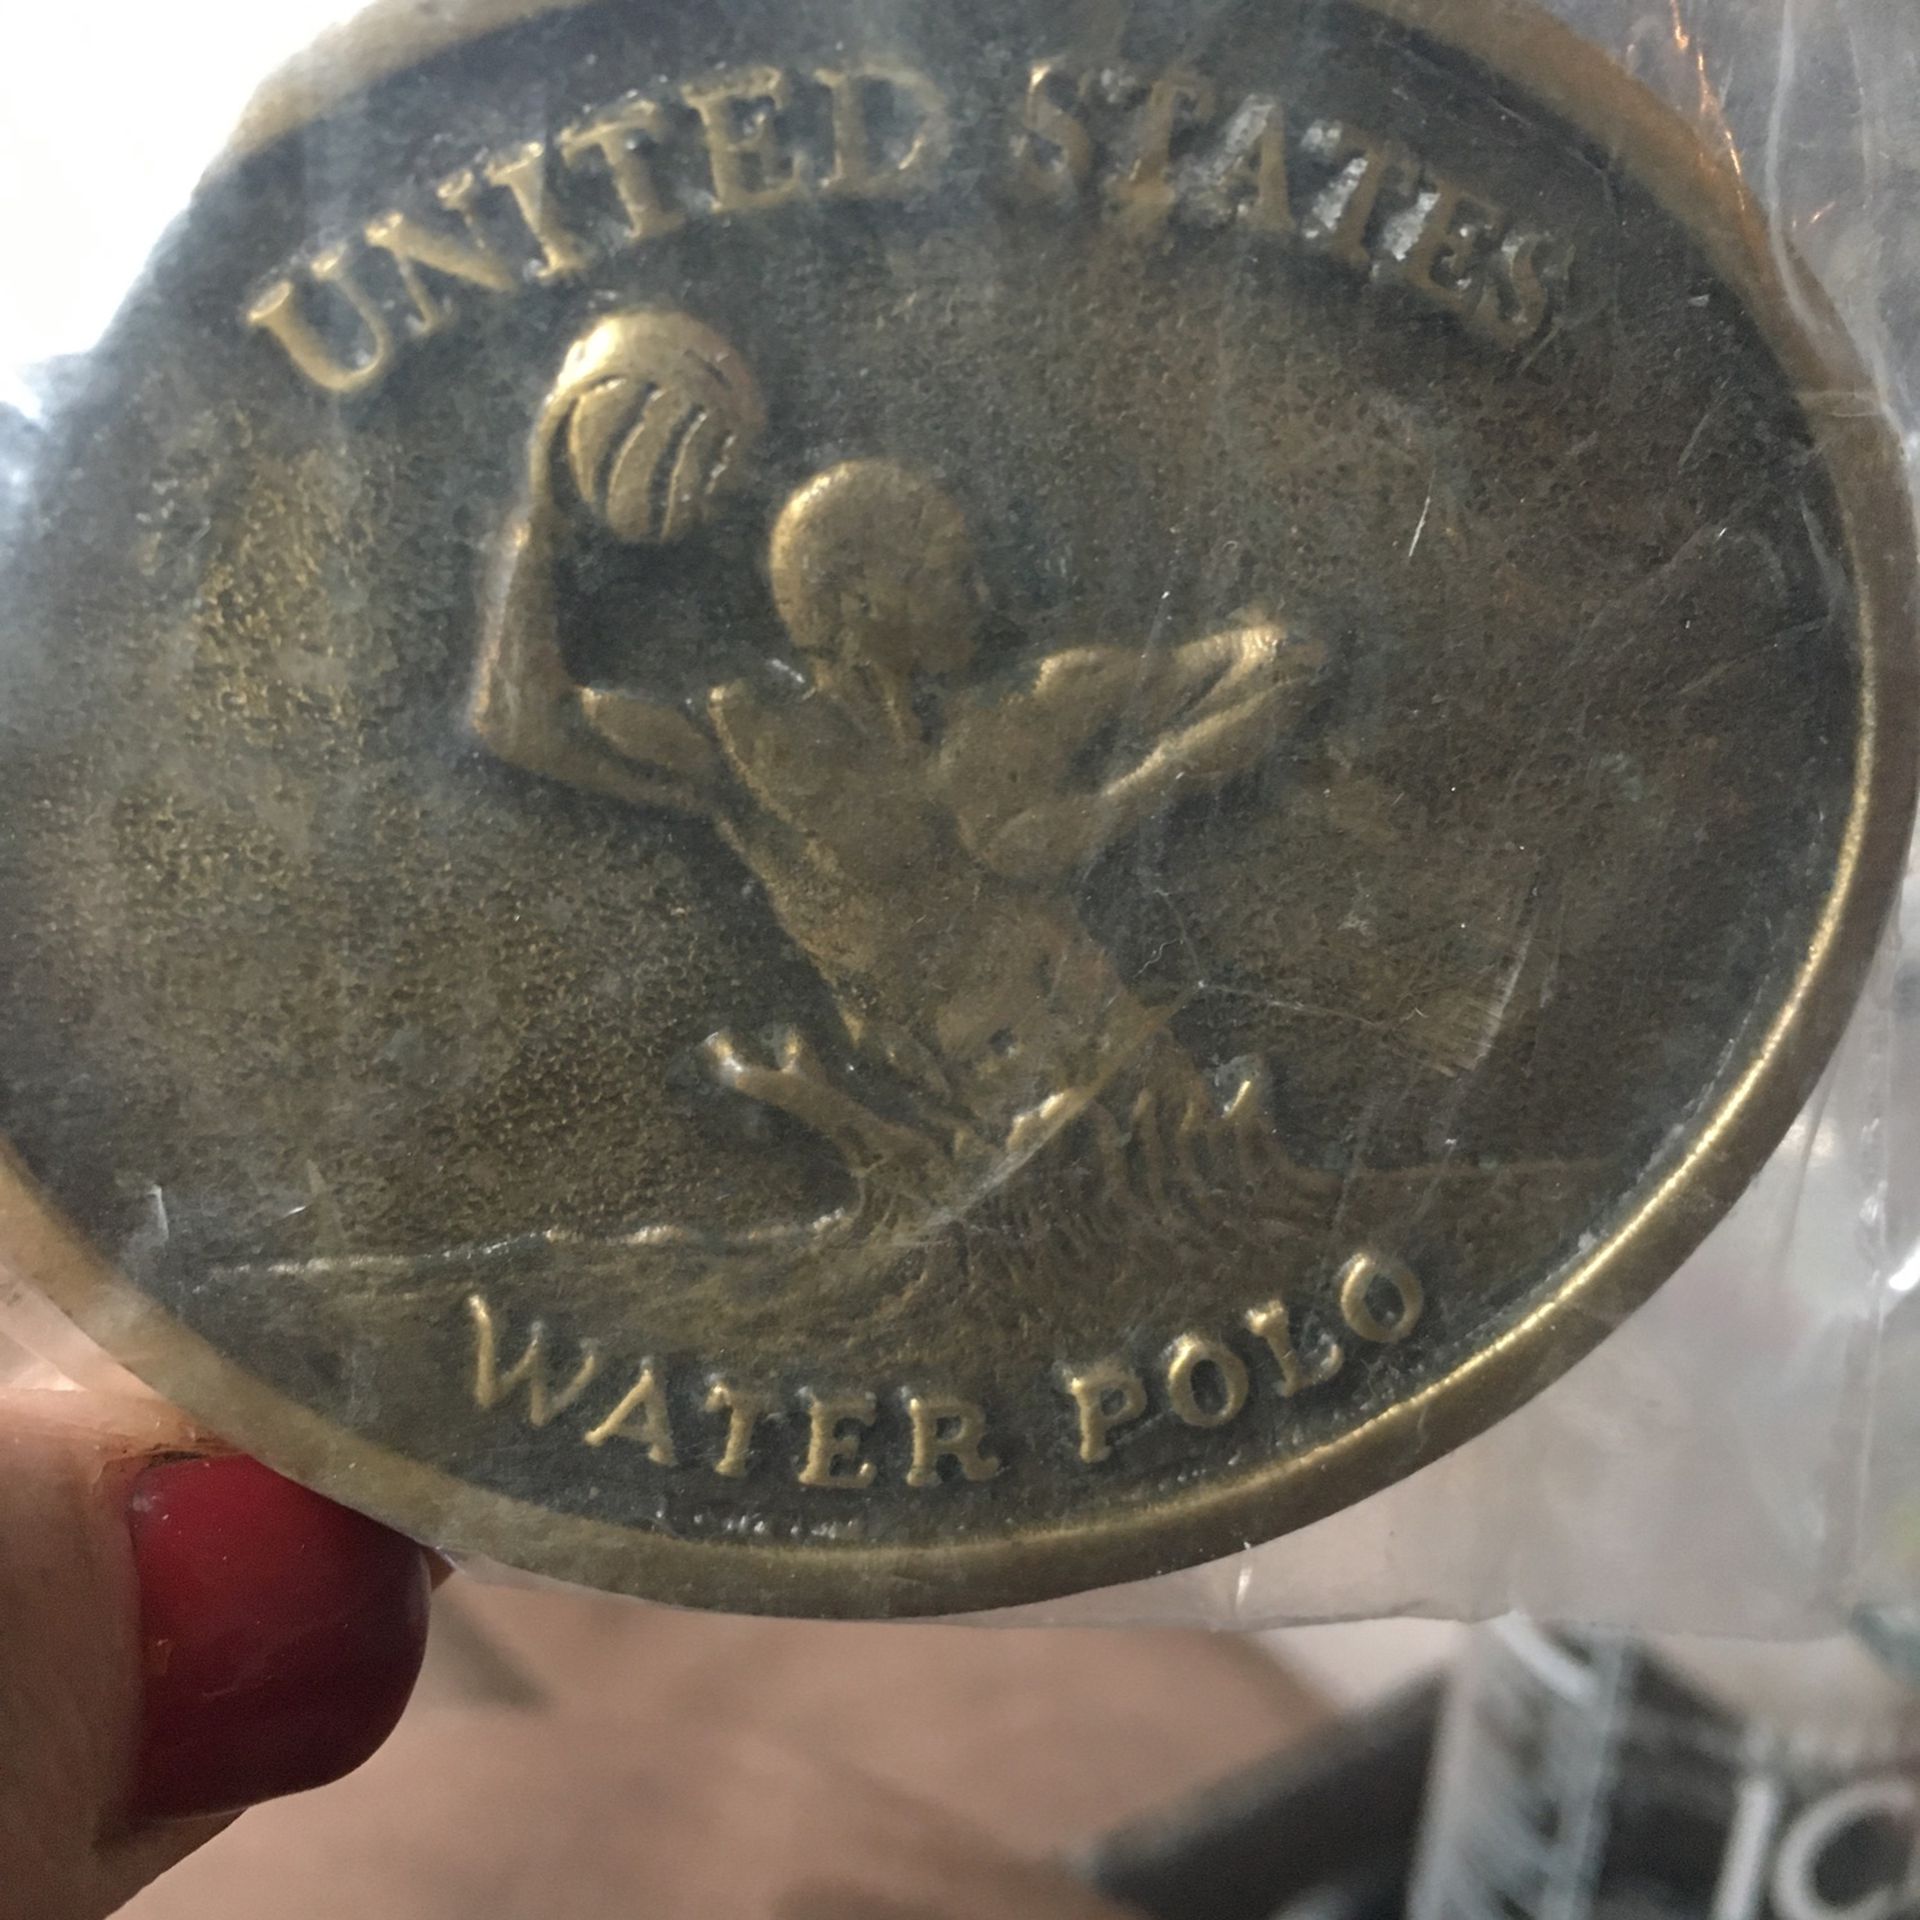 U.S. Water Polo Belt Buckle